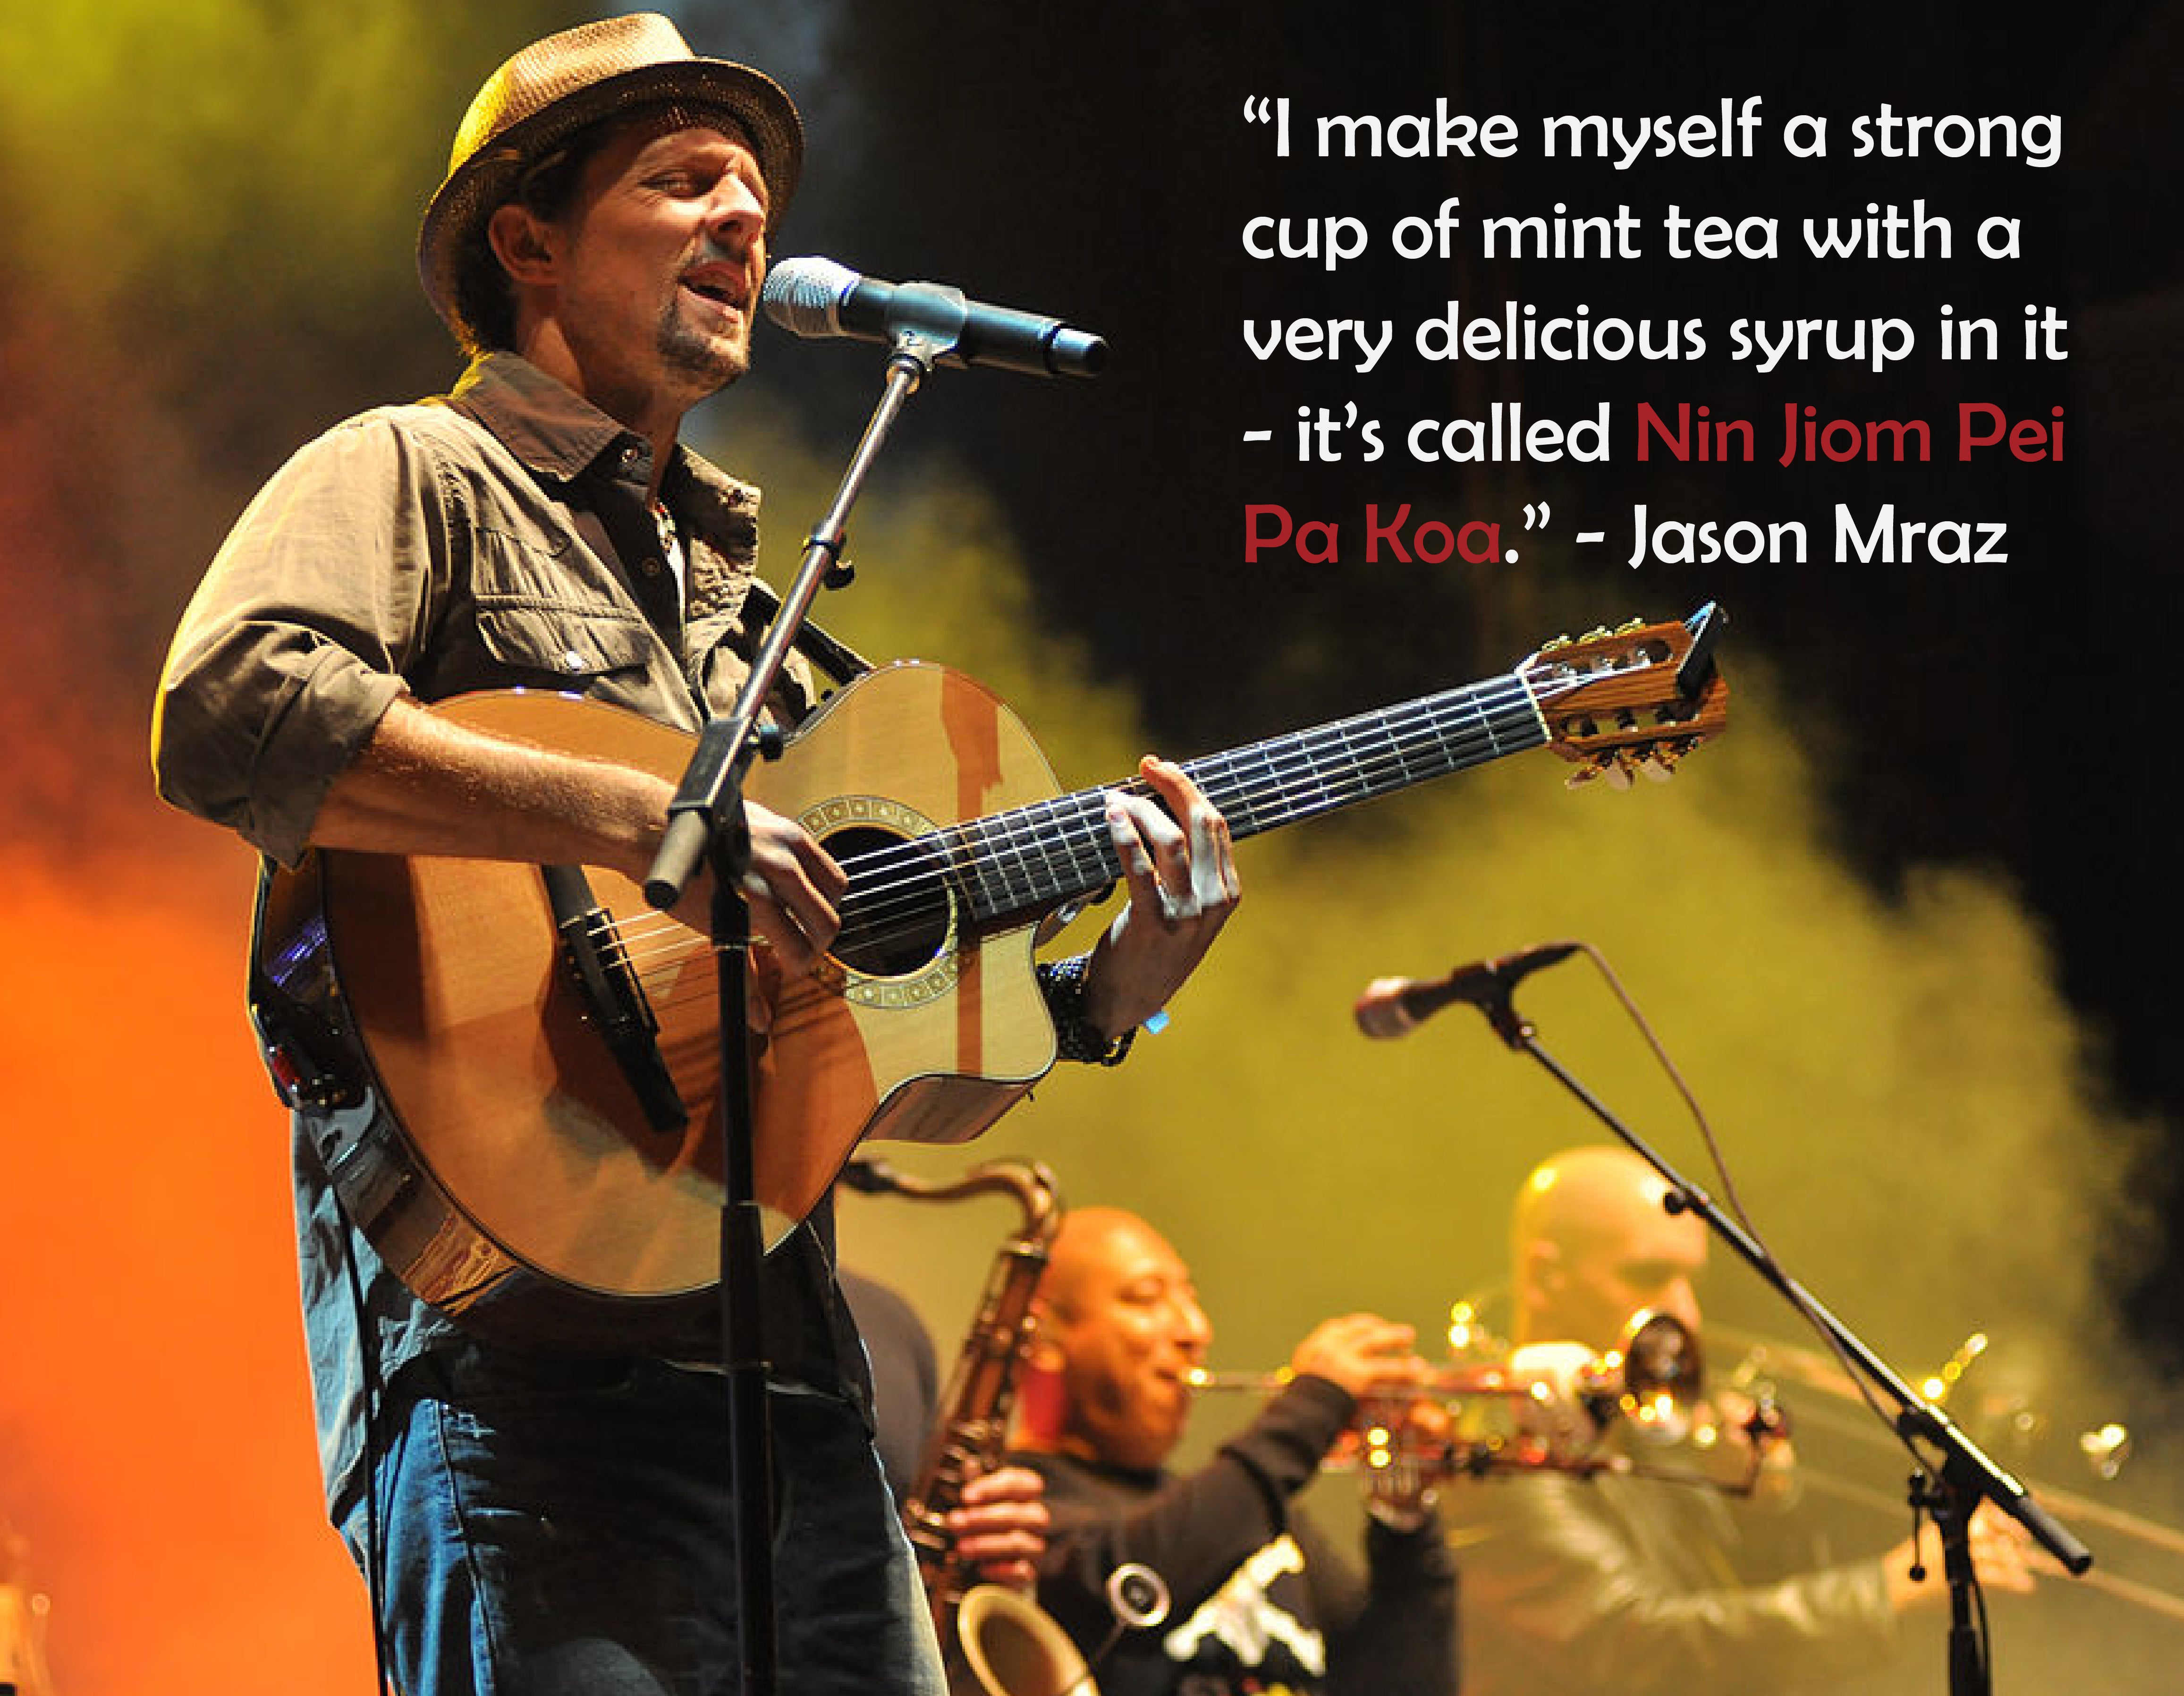 Der Grammy-Gewinner Jason Mraz wärmt sich mit Nin Jiom Pei Pa Koa auf